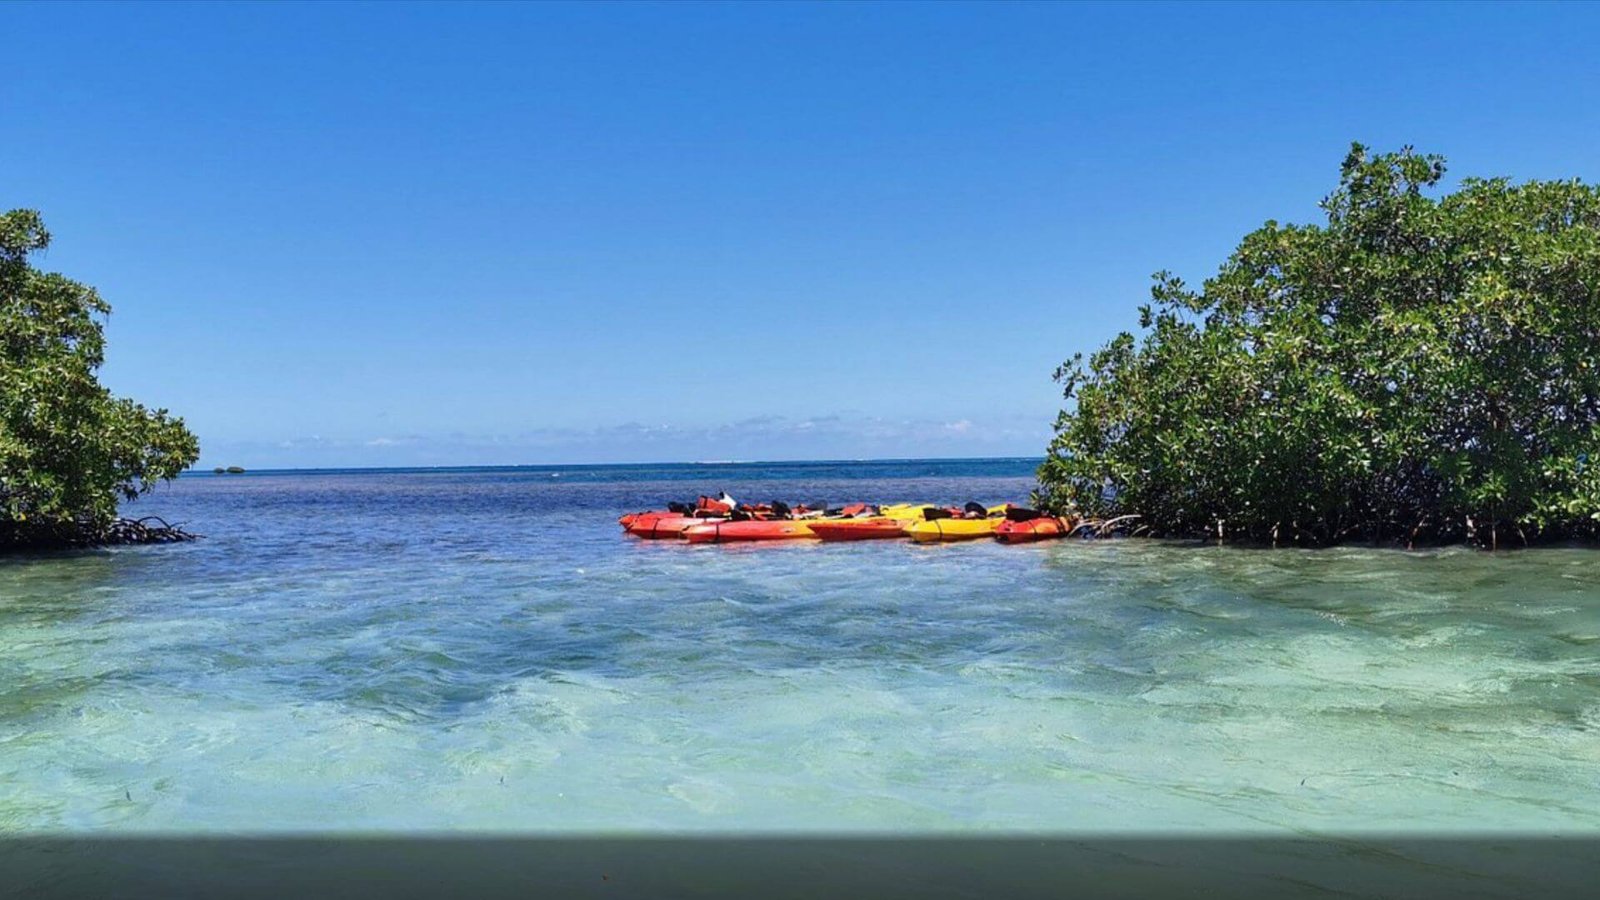 Des kayaks de couleur rouge et jaune sont amarrés près de la côte dans les eaux claires d'une plage en Guadeloupe. Les kayaks sont disposés en ligne le long d'un bosquet de mangrove, avec l'océan bleu et l'horizon clair en arrière-plan. L'atmosphère est calme et invitante, idéale pour des activités nautiques comme le kayak dans un environnement tropical.